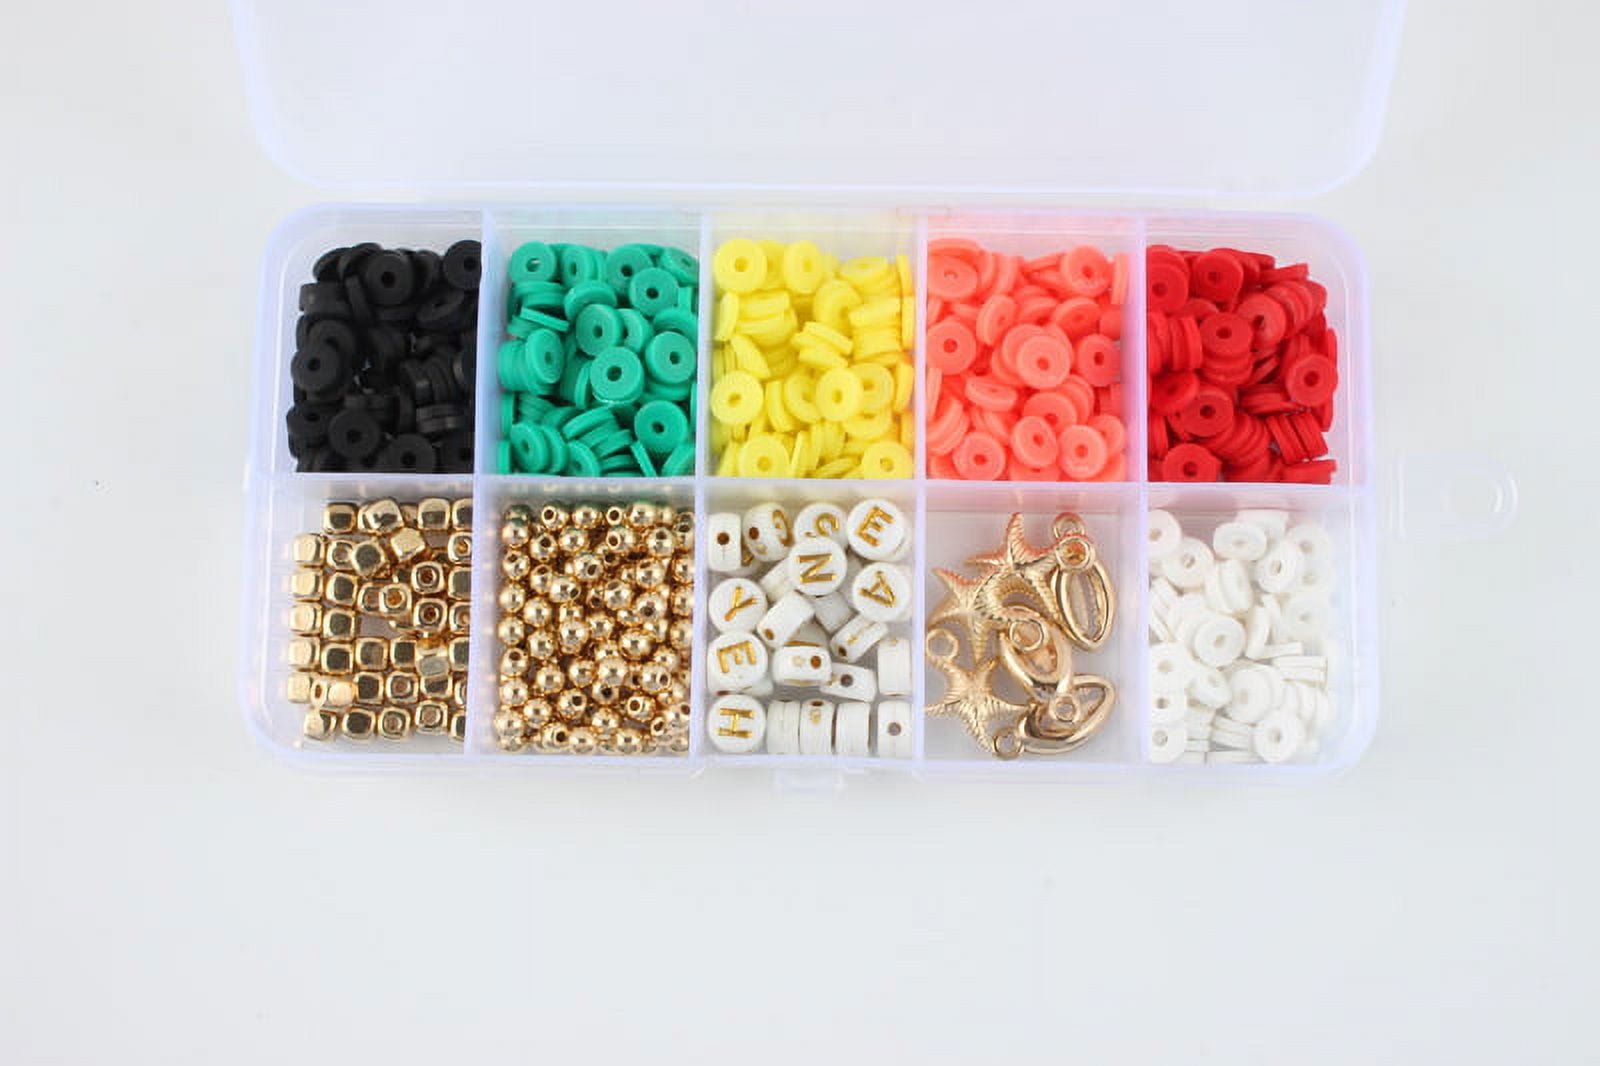  Zenidoo Clay Beads Bracelet Making Kit for Girls